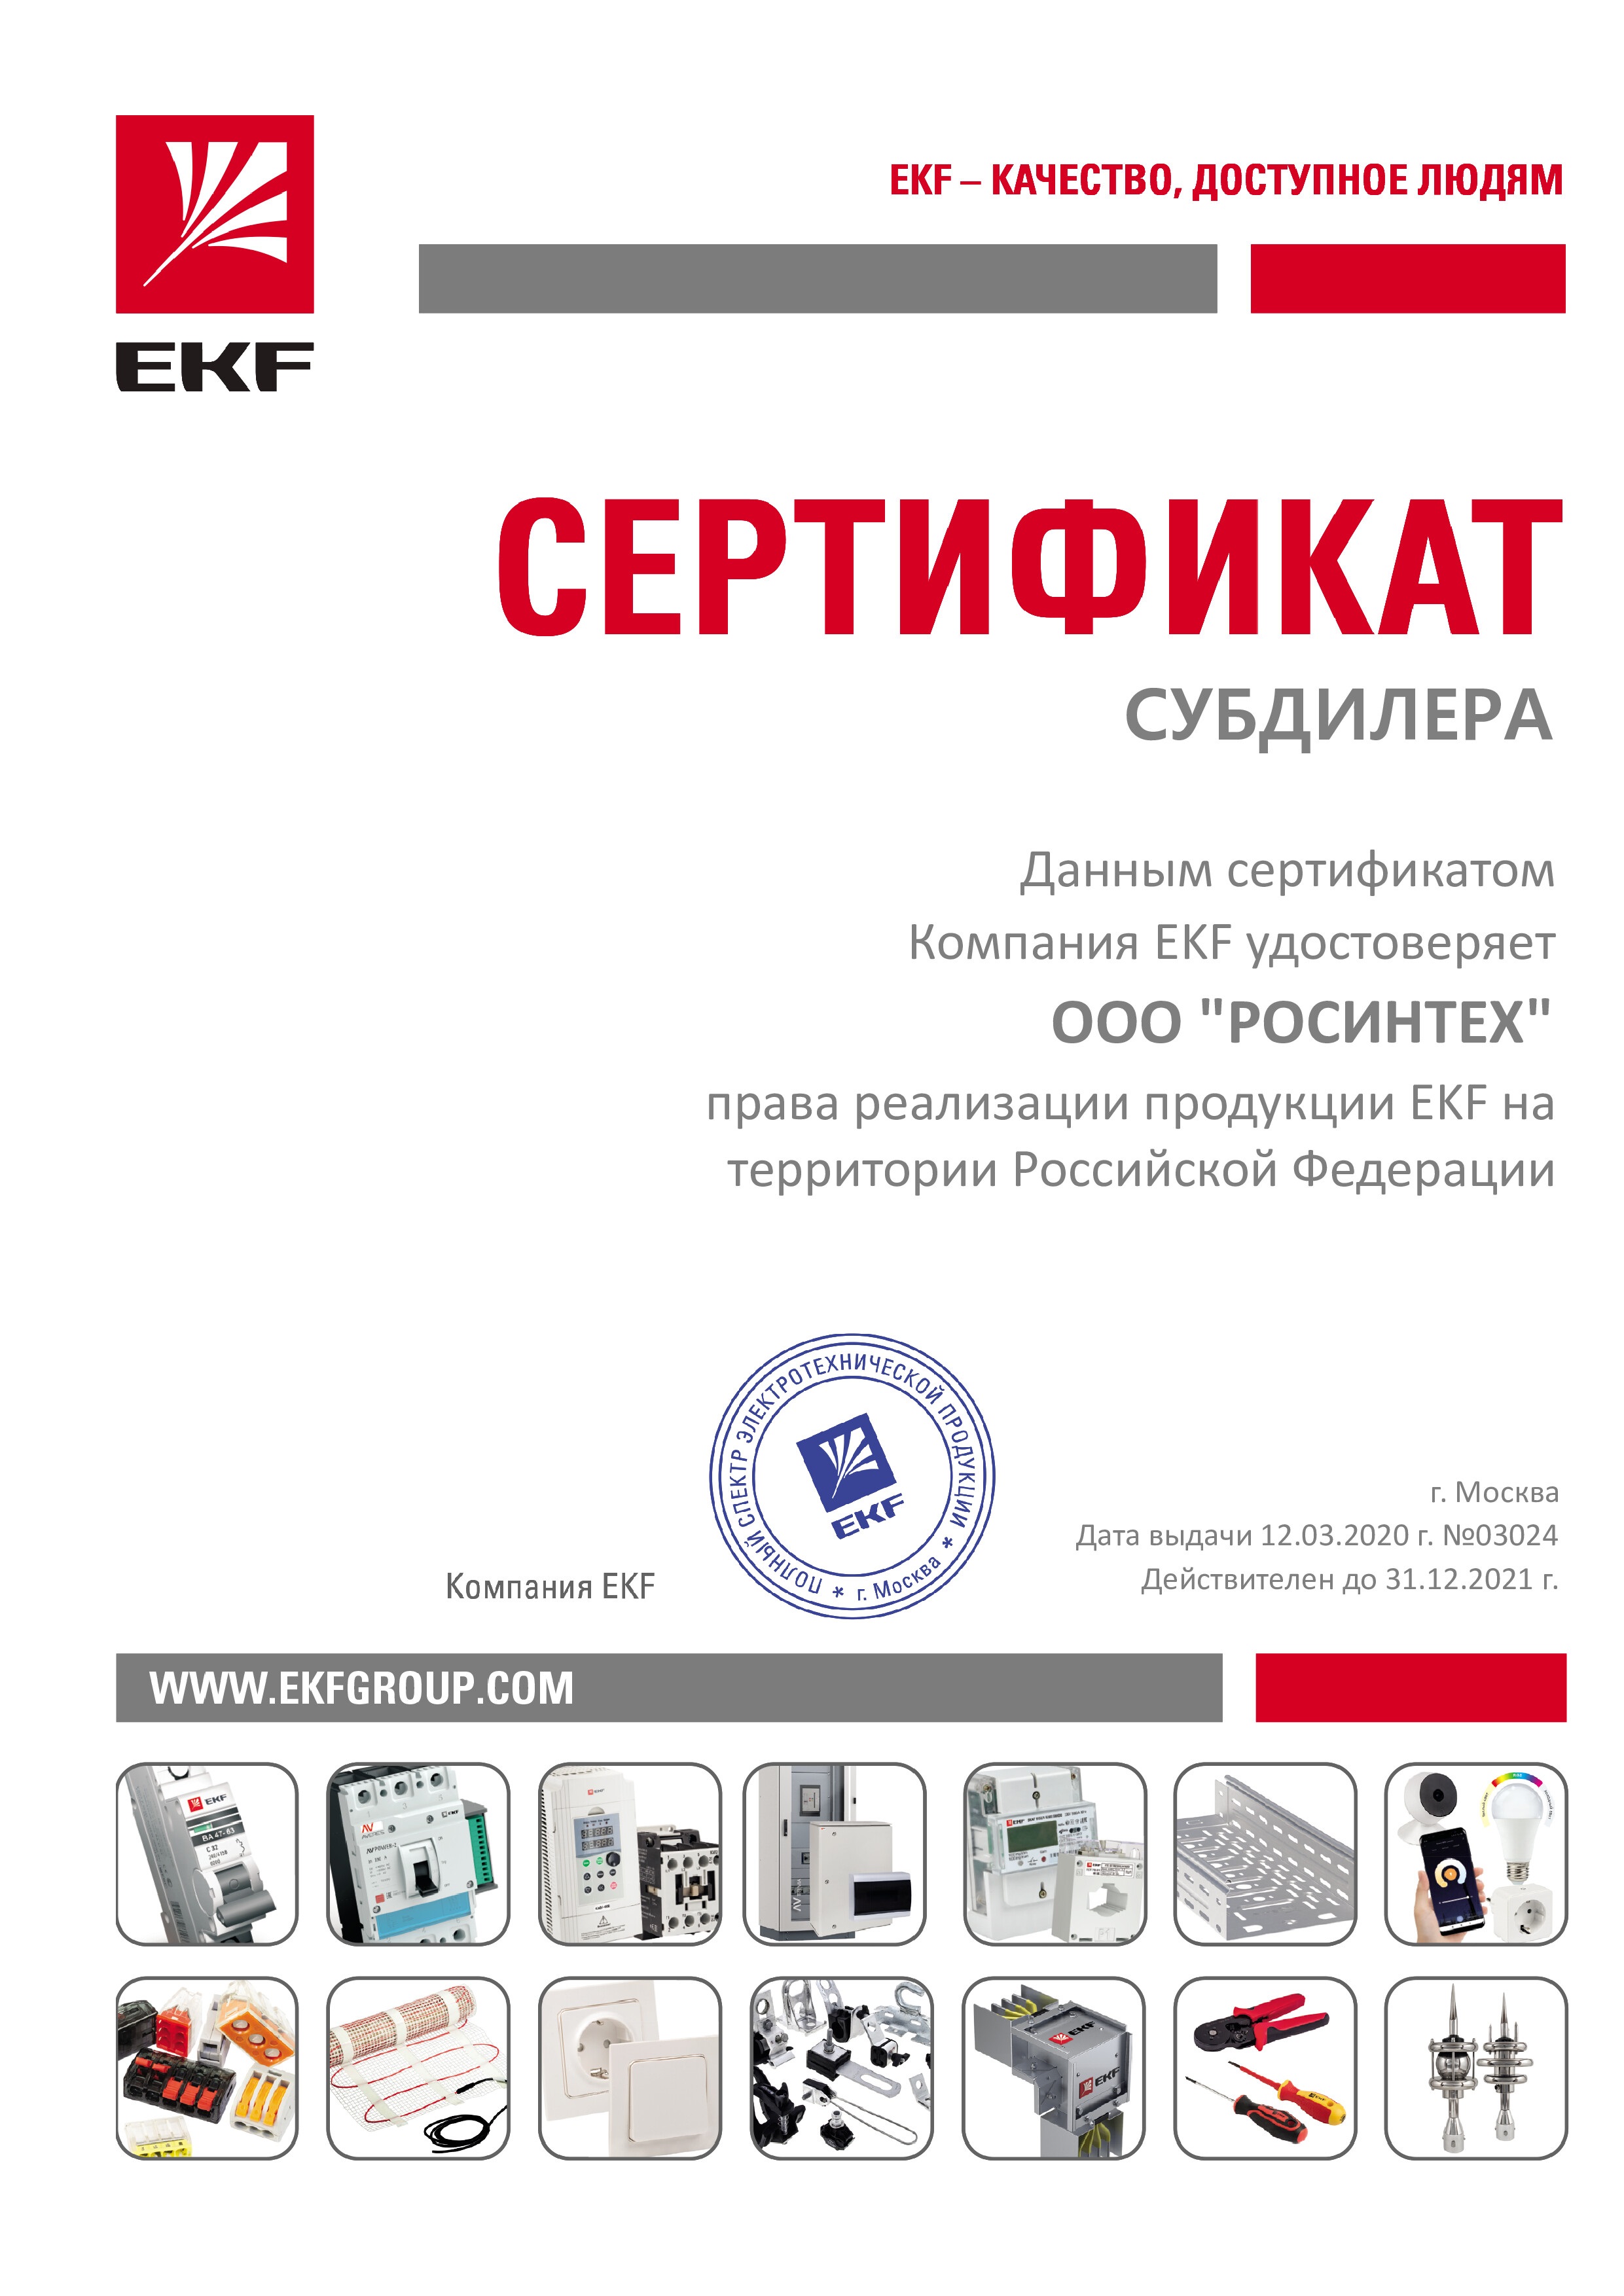 Сертификат авторизованного субдилера EKF